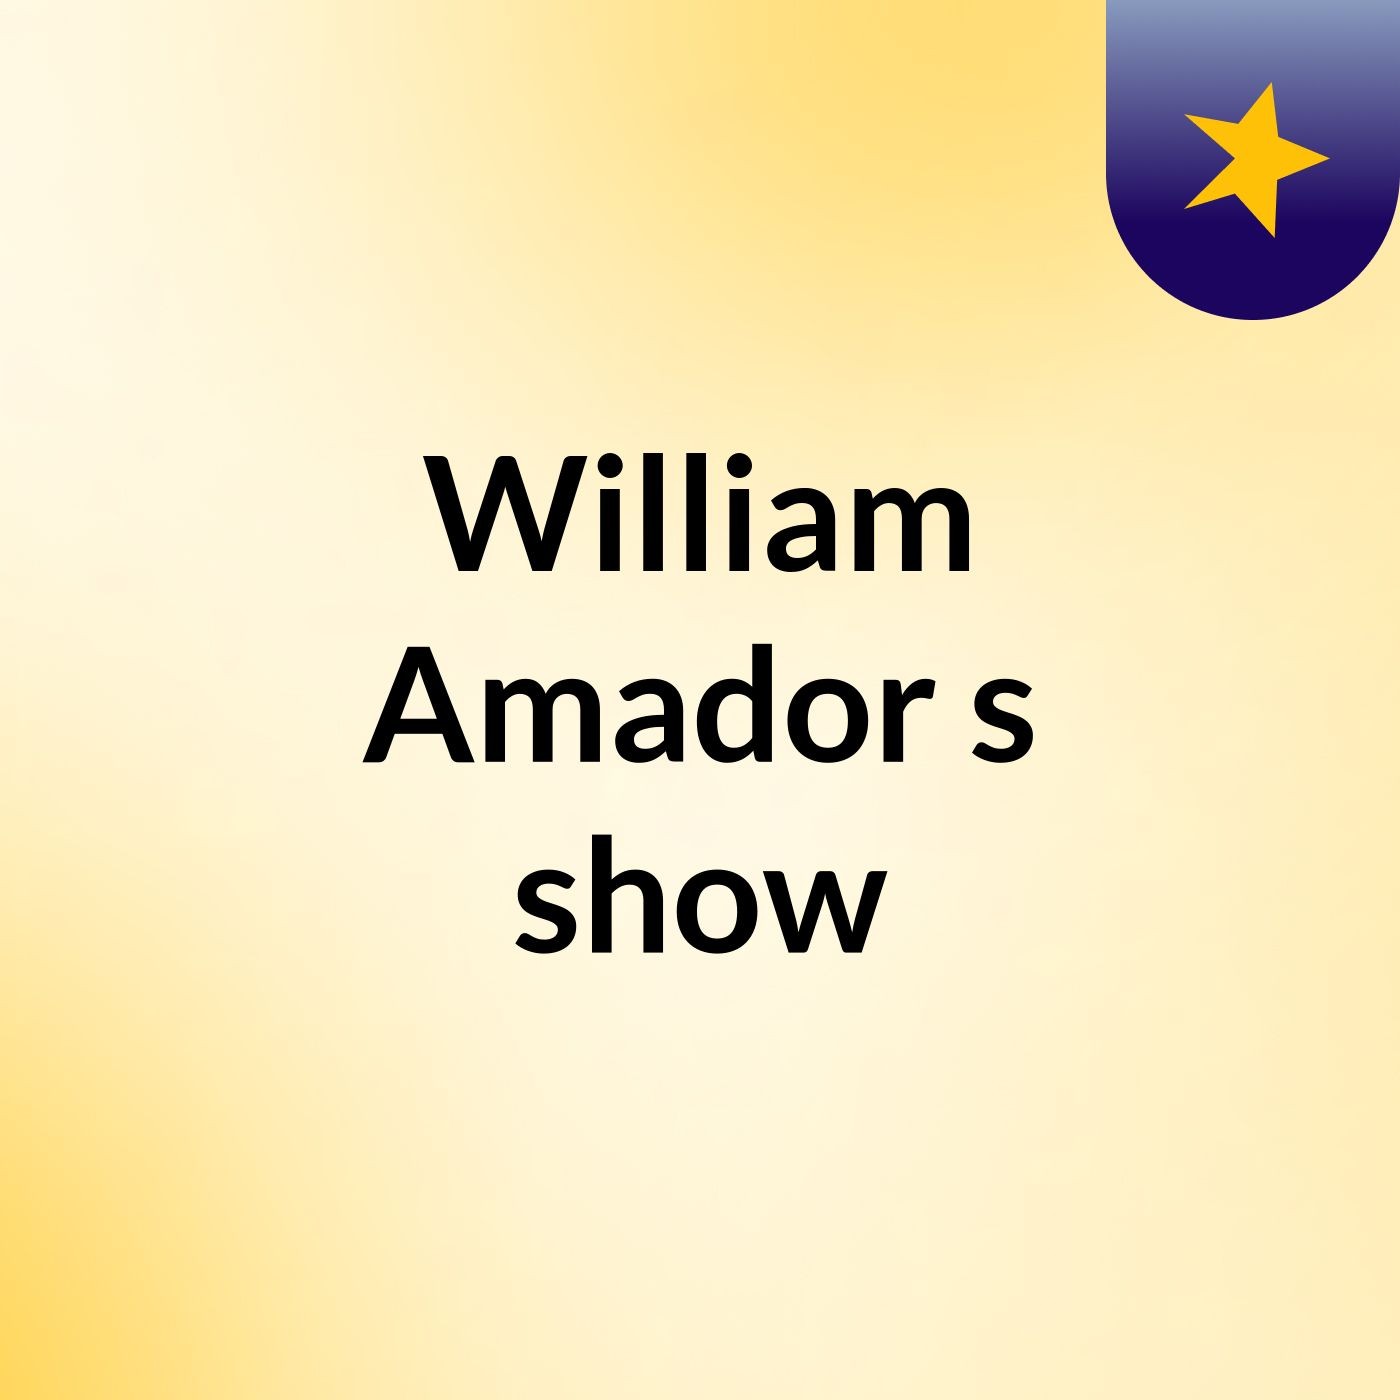 William Amador's show